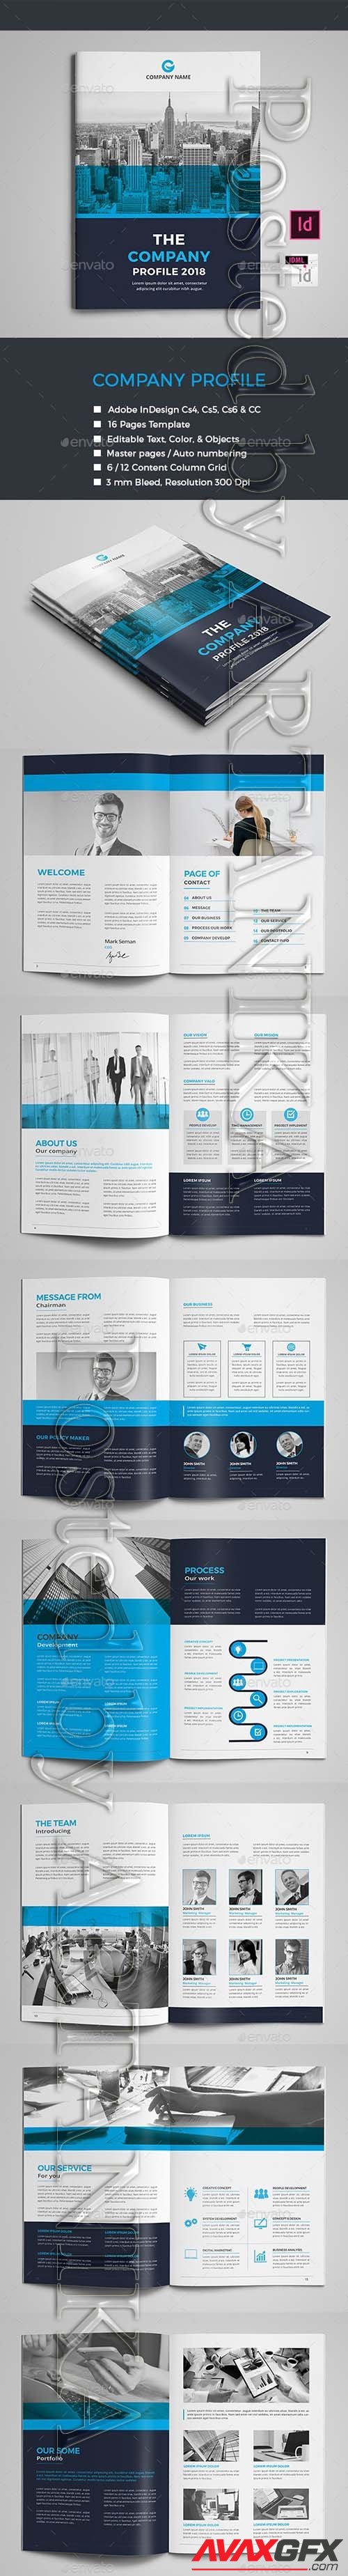 GraphicRiver - Company Profile Brochure 21147913